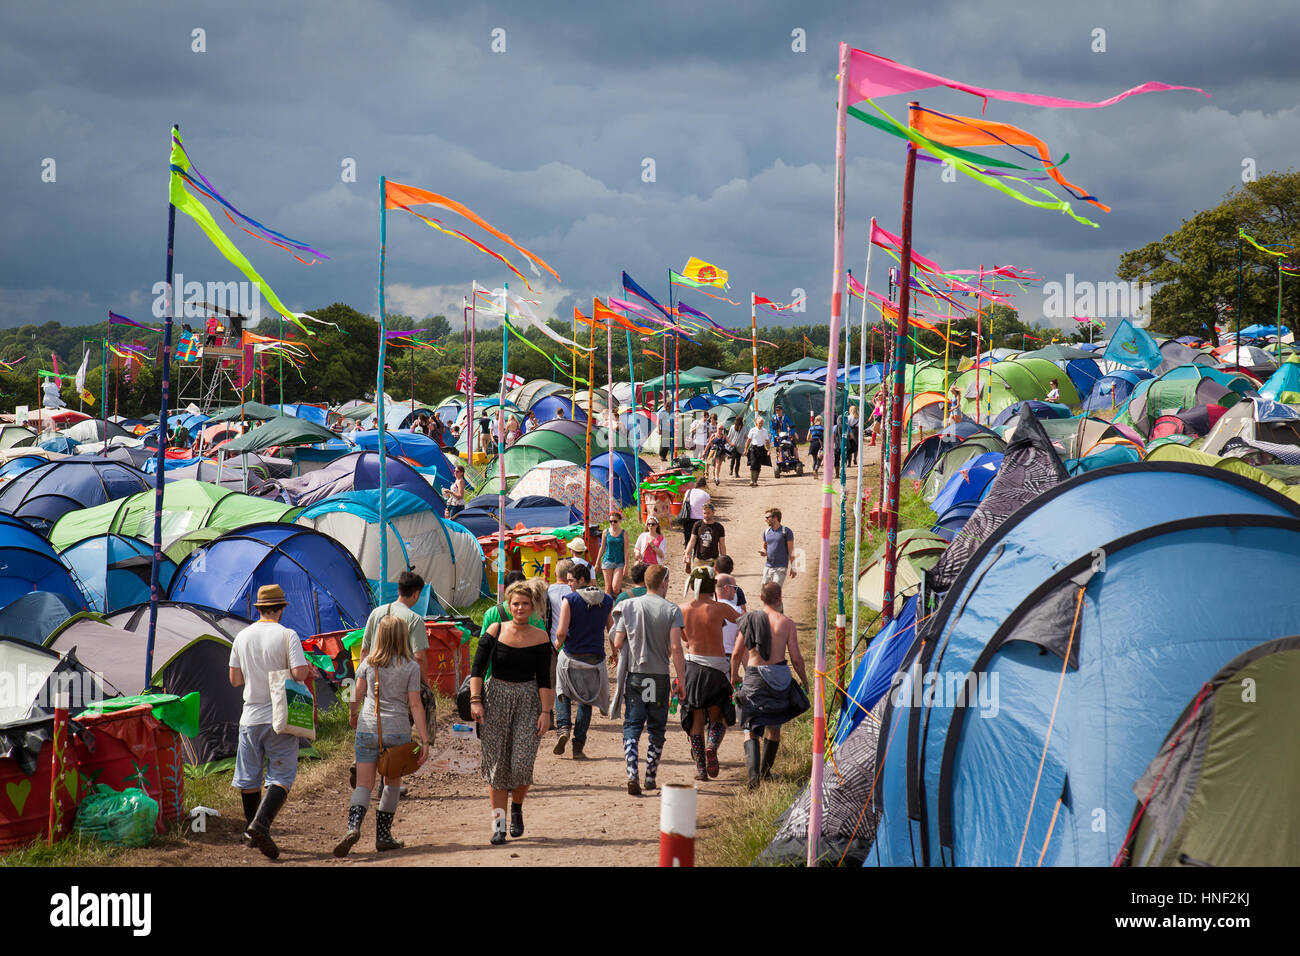 GLASTONBURY, UK - 27. Juni 2014: Menschen zu Fuß durch einen Campingbereich mit Colouful Fahnen beim Glastonbury Festival 2014 Stockfoto